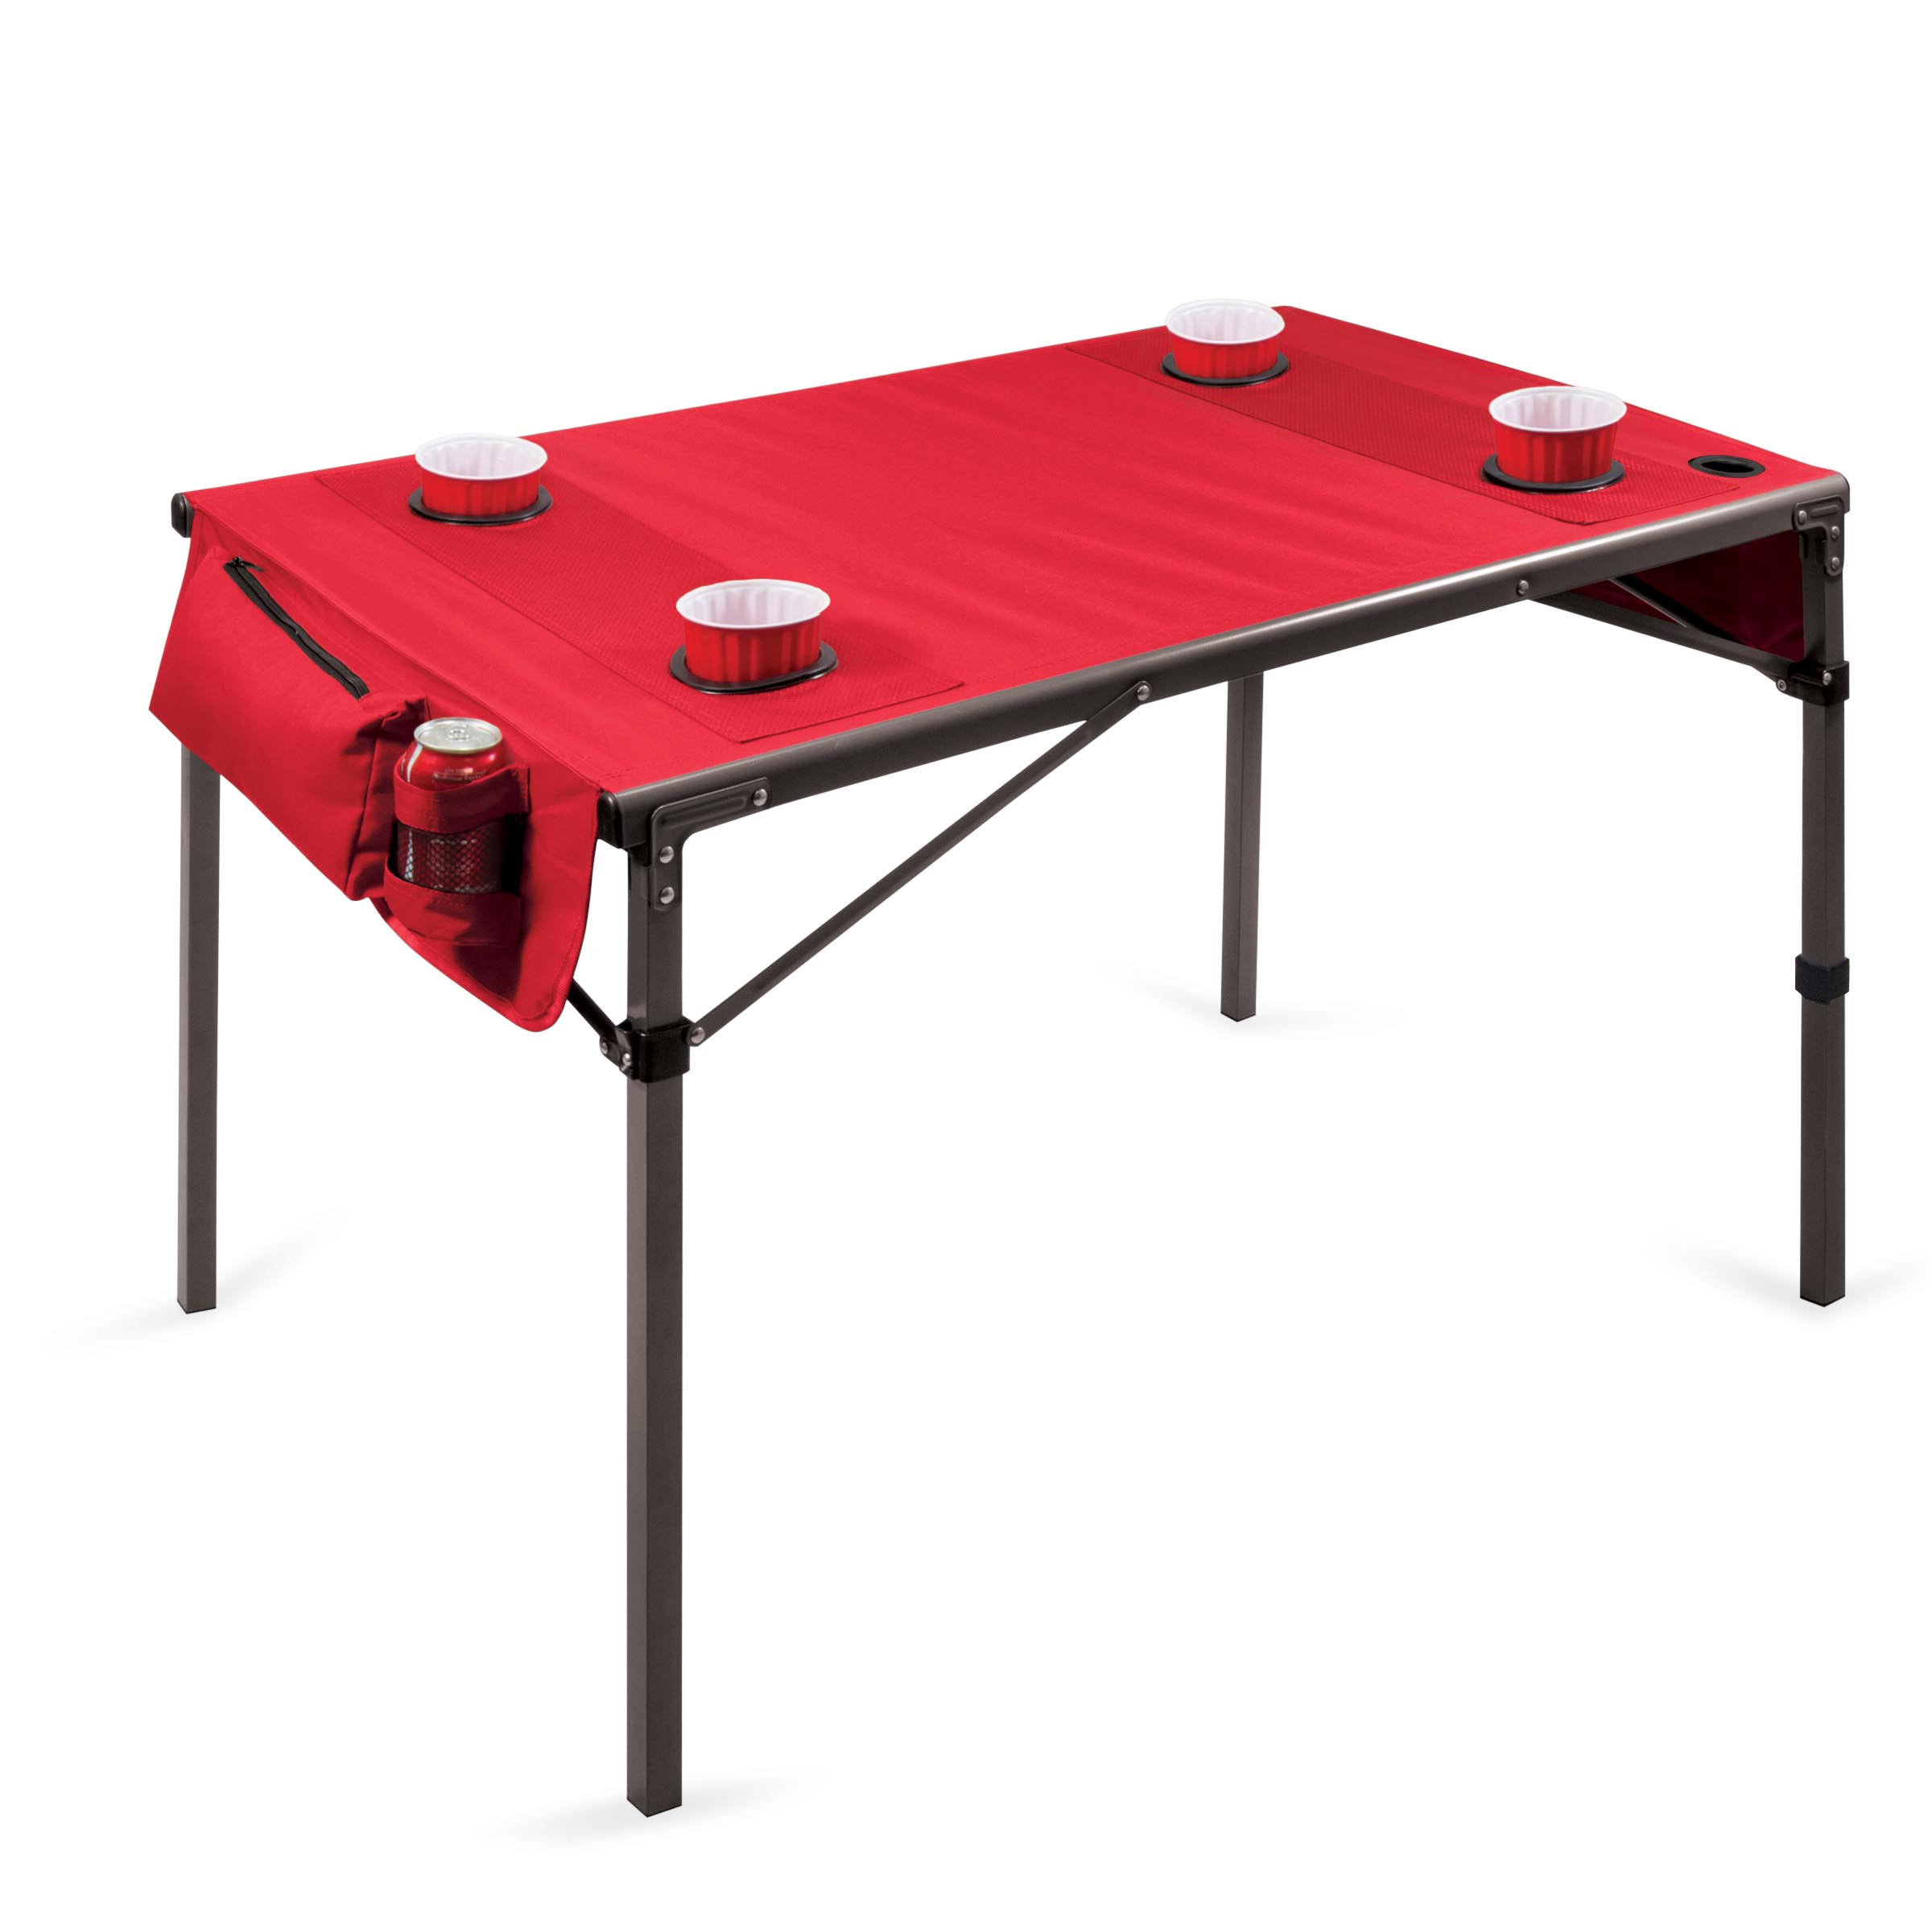 【美國Picnic Time】TRAVEL TABLE 超輕量野餐折疊桌(紅)